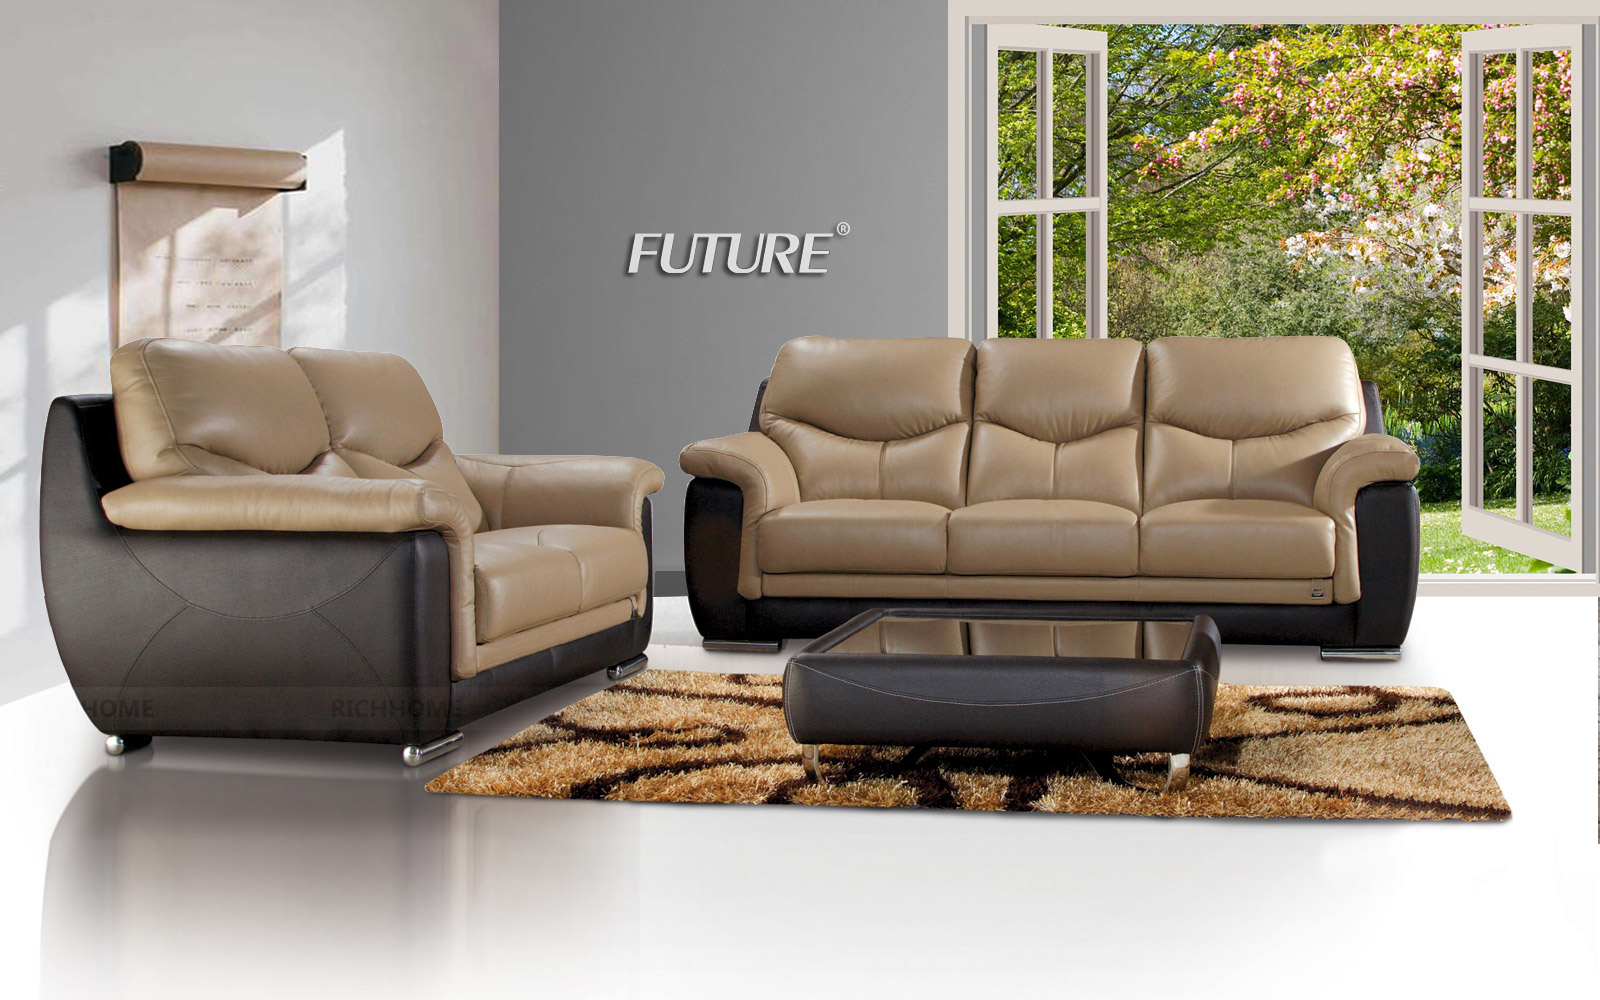 Kích thước bàn phòng khách chuẩn phù hợp với ghế sofa - Ảnh 4